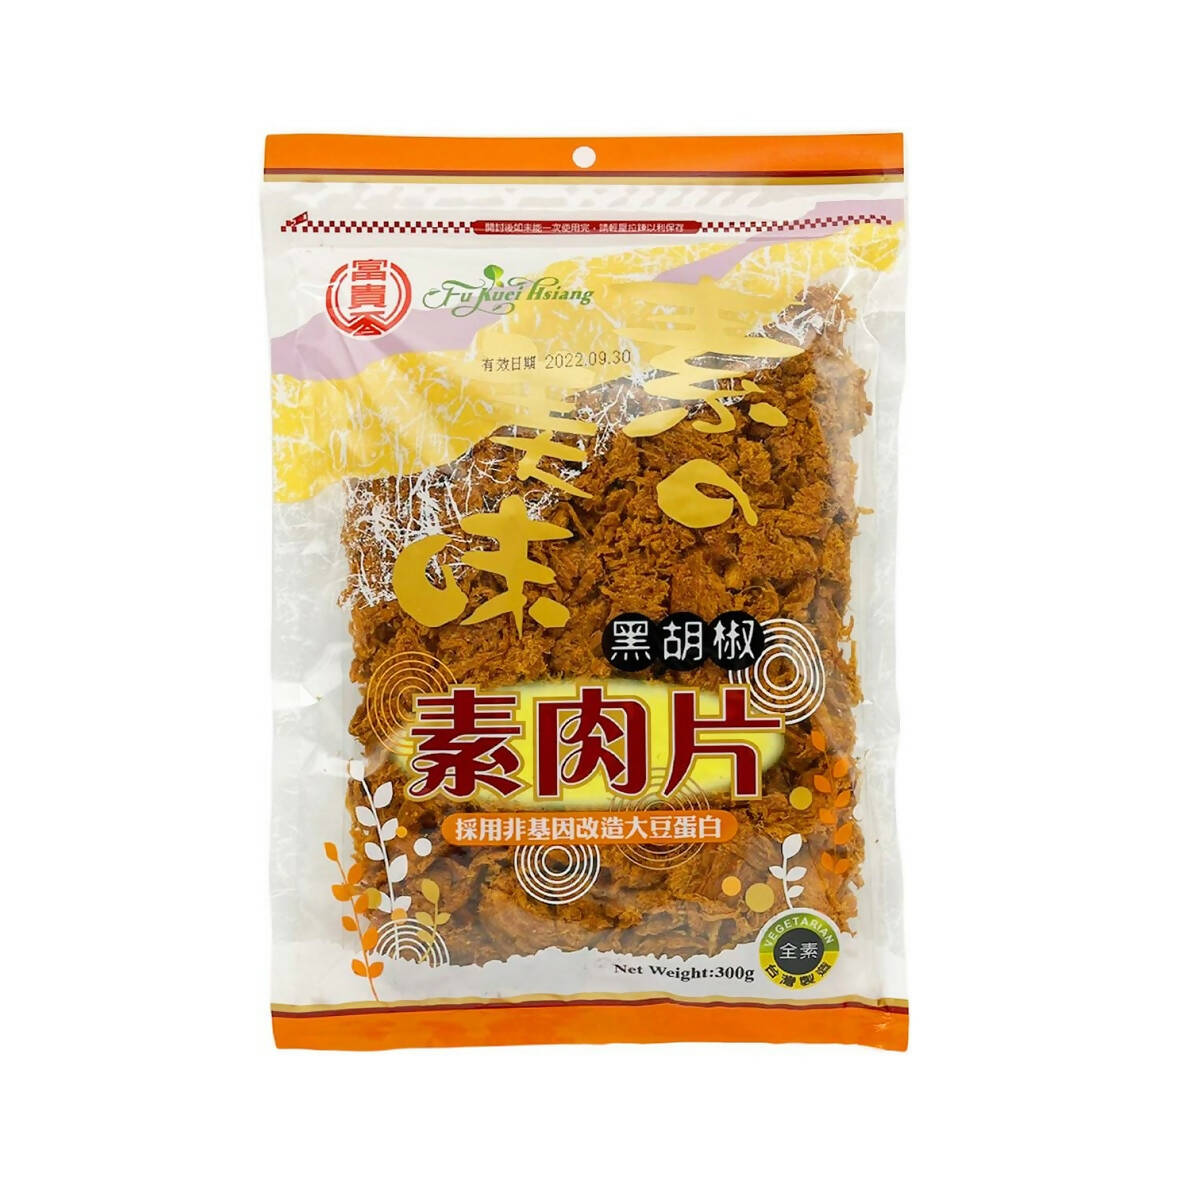 Taiwan Direct Mail【Fuguixiang】 FU KUEI HIANG Black Pepper Sliced ​​Meat (Vegan) 300g 